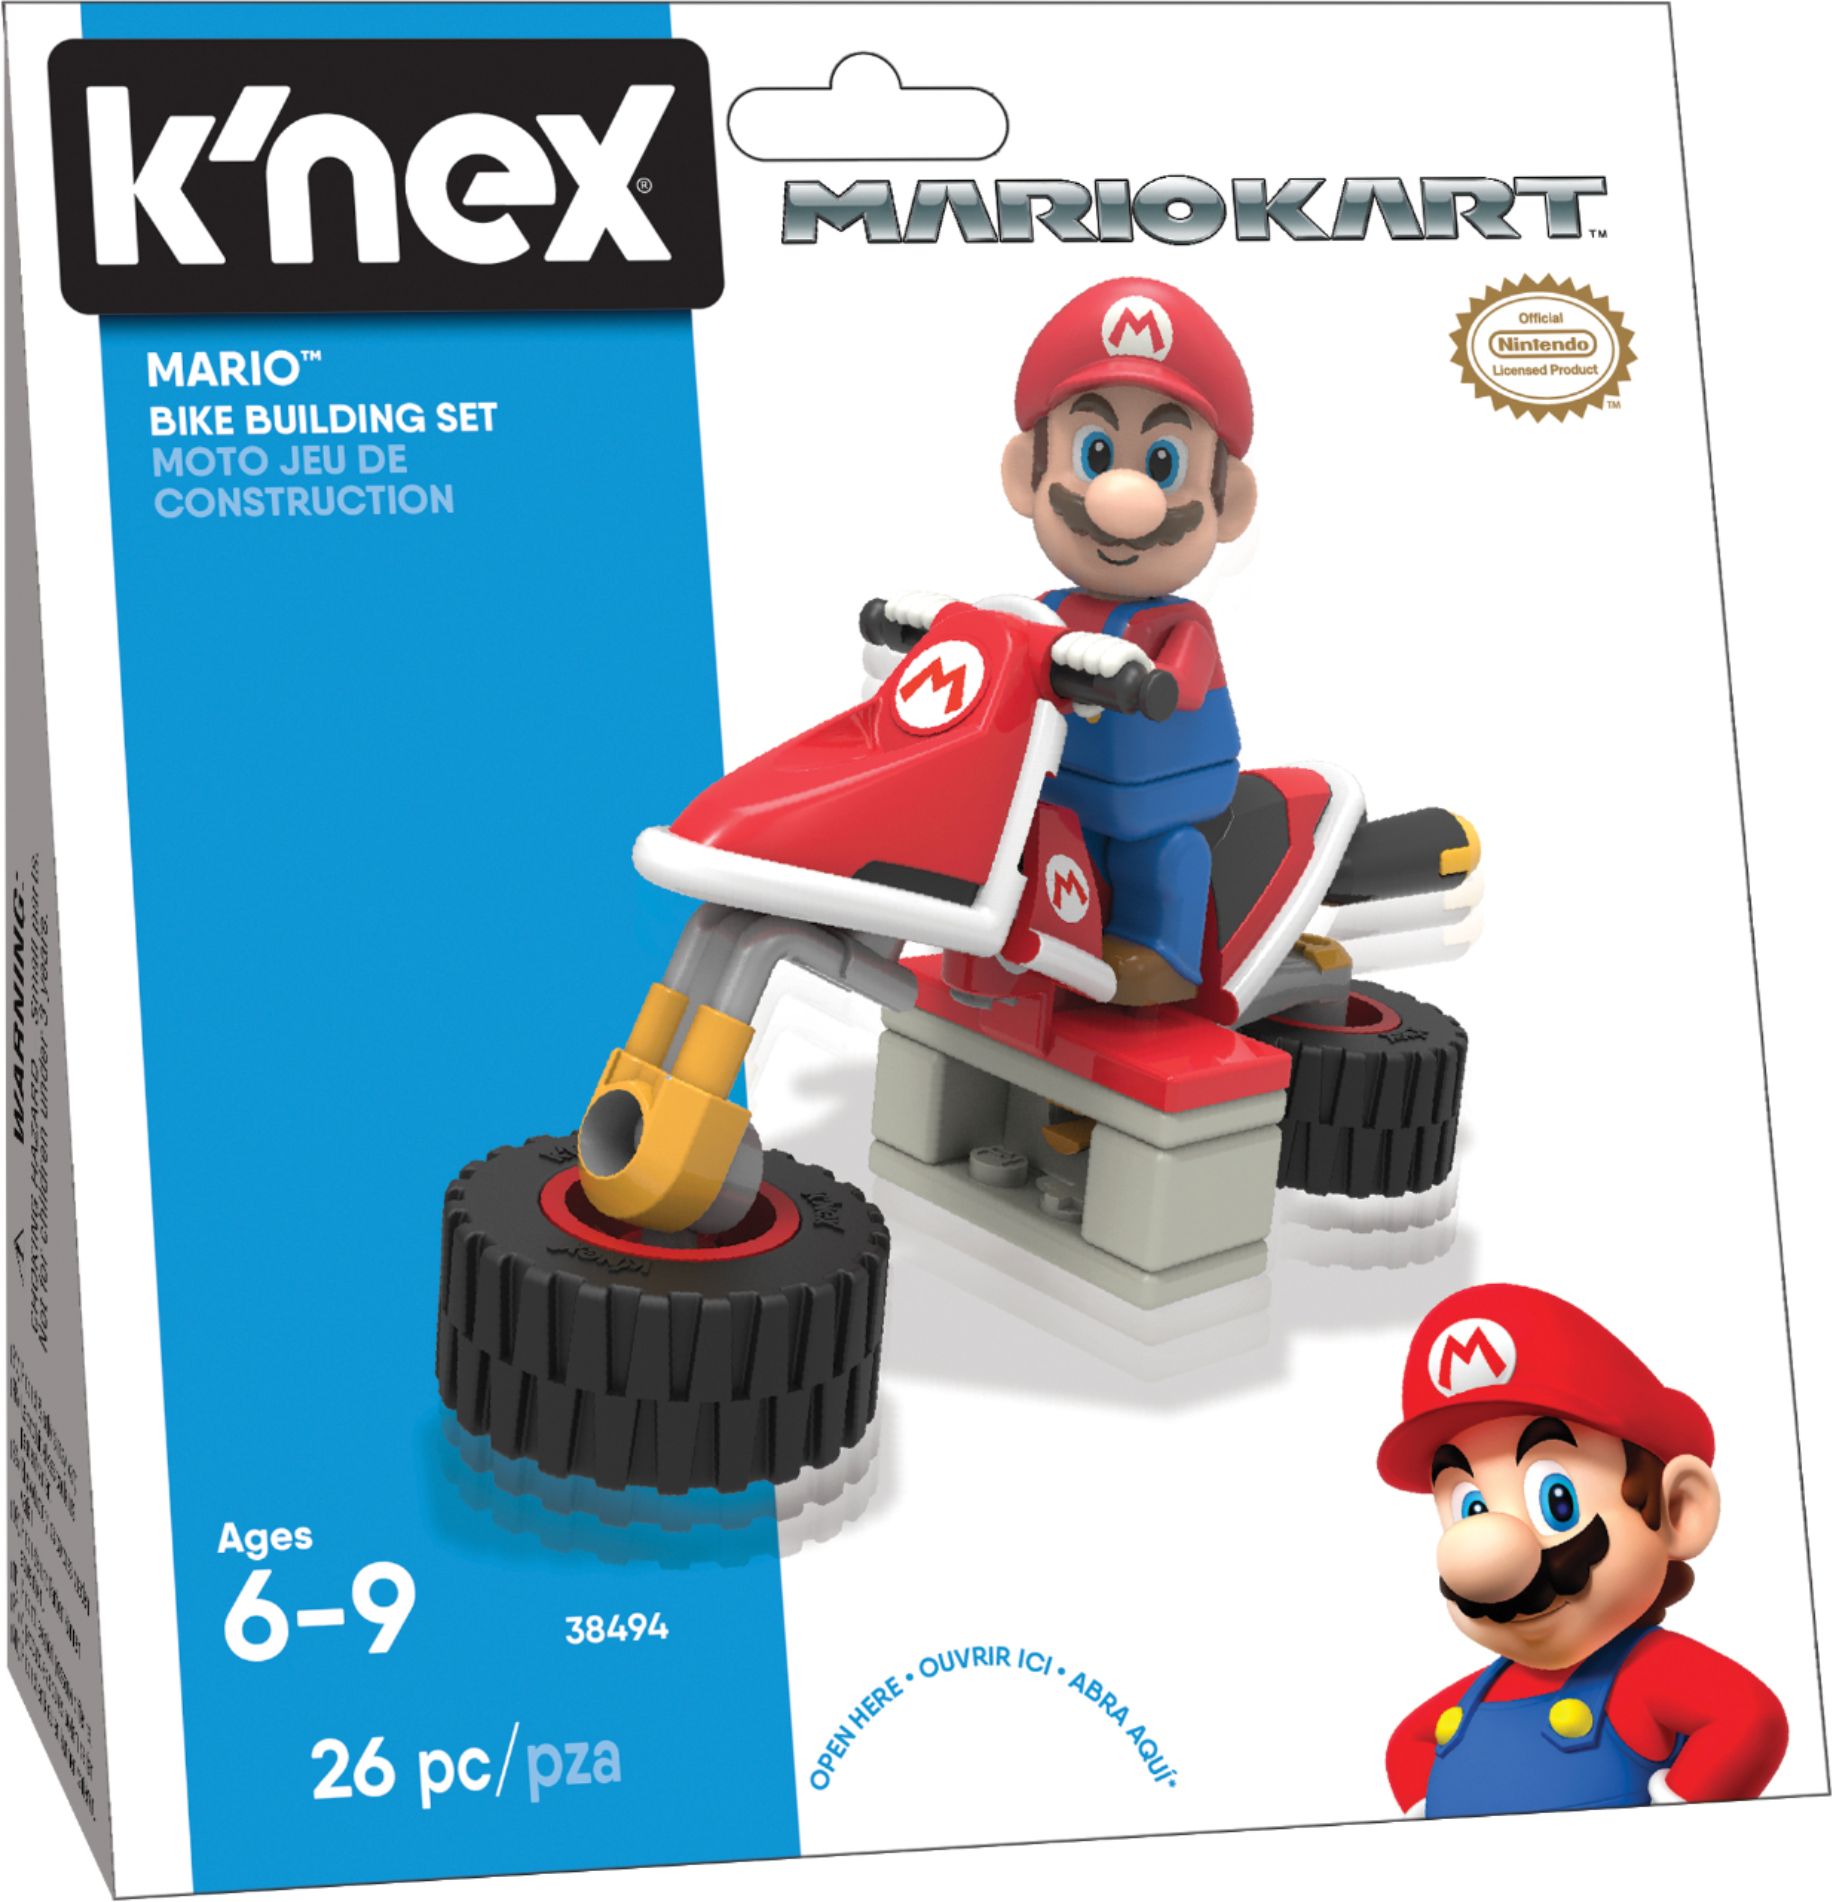 Best Buy: K'NEX Mario Kart™ Bike Building Set Styles May Vary 38700